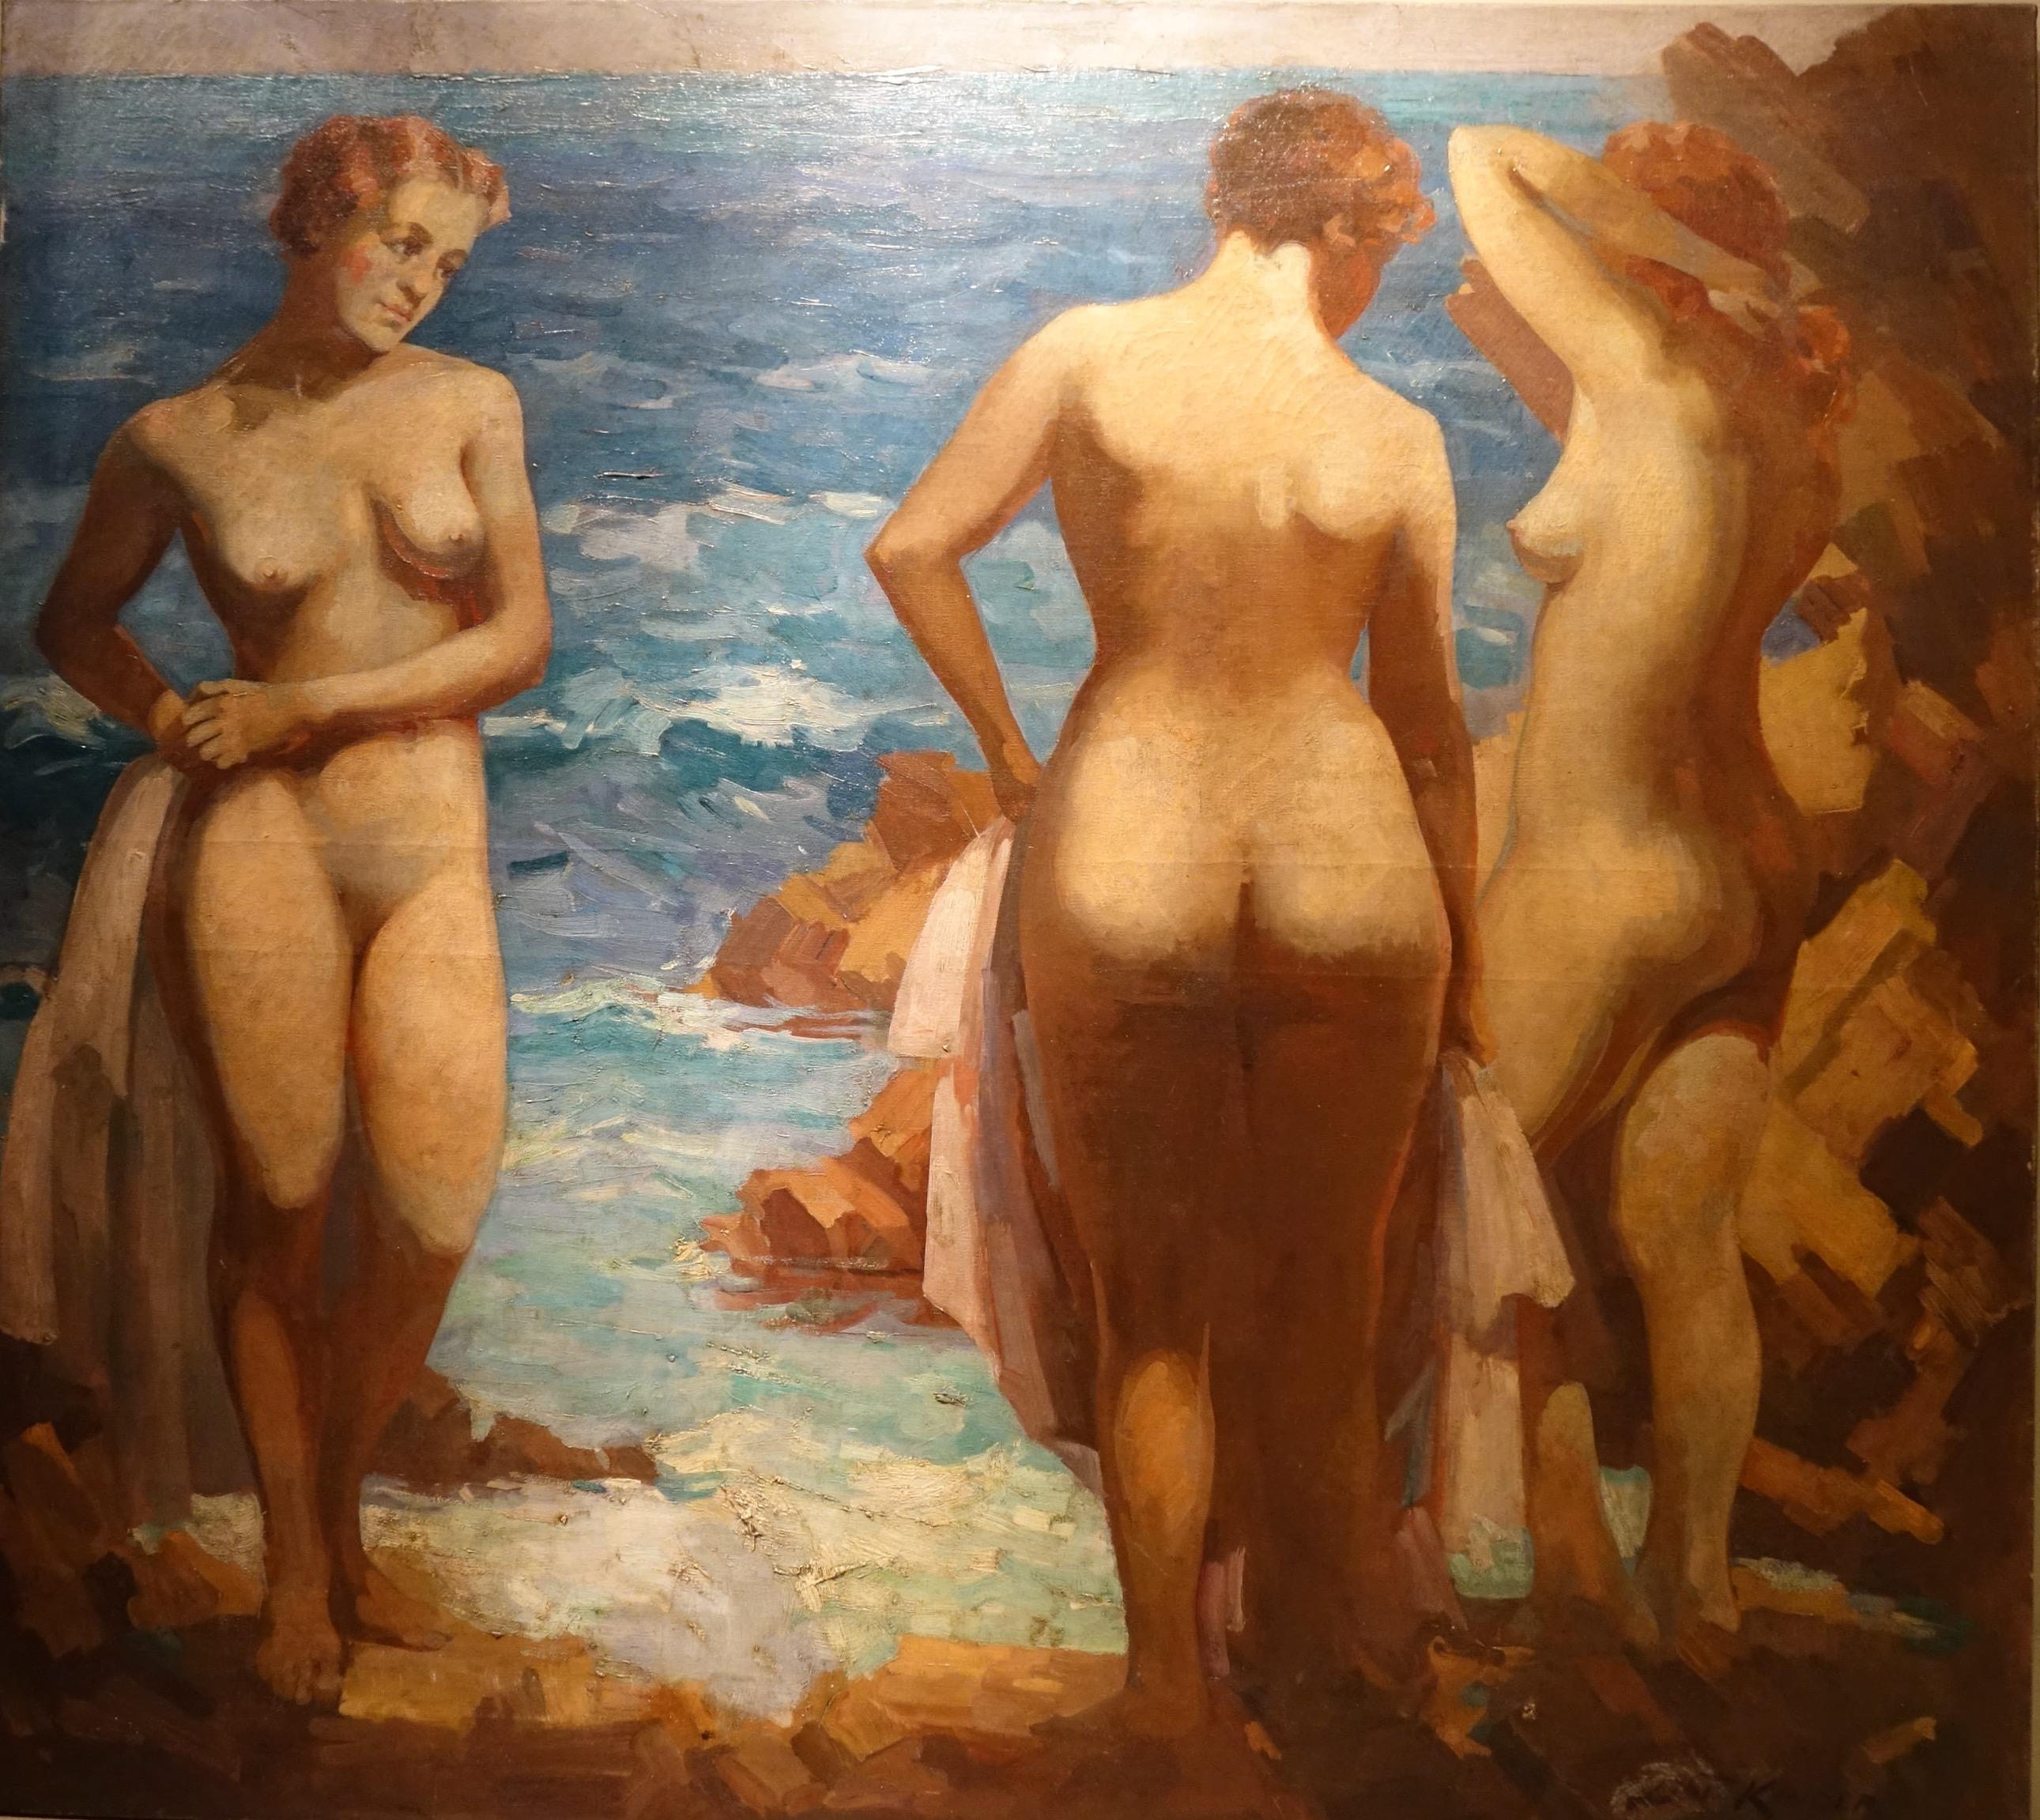 Huile sur toile représentant trois jeunes femmes nues qui viennent de se baigner, chacune tenant une serviette à la main. L'un est représenté de face, celui du milieu de dos, celui de droite de profil. En arrière-plan, la mer et l'horizon lointain.